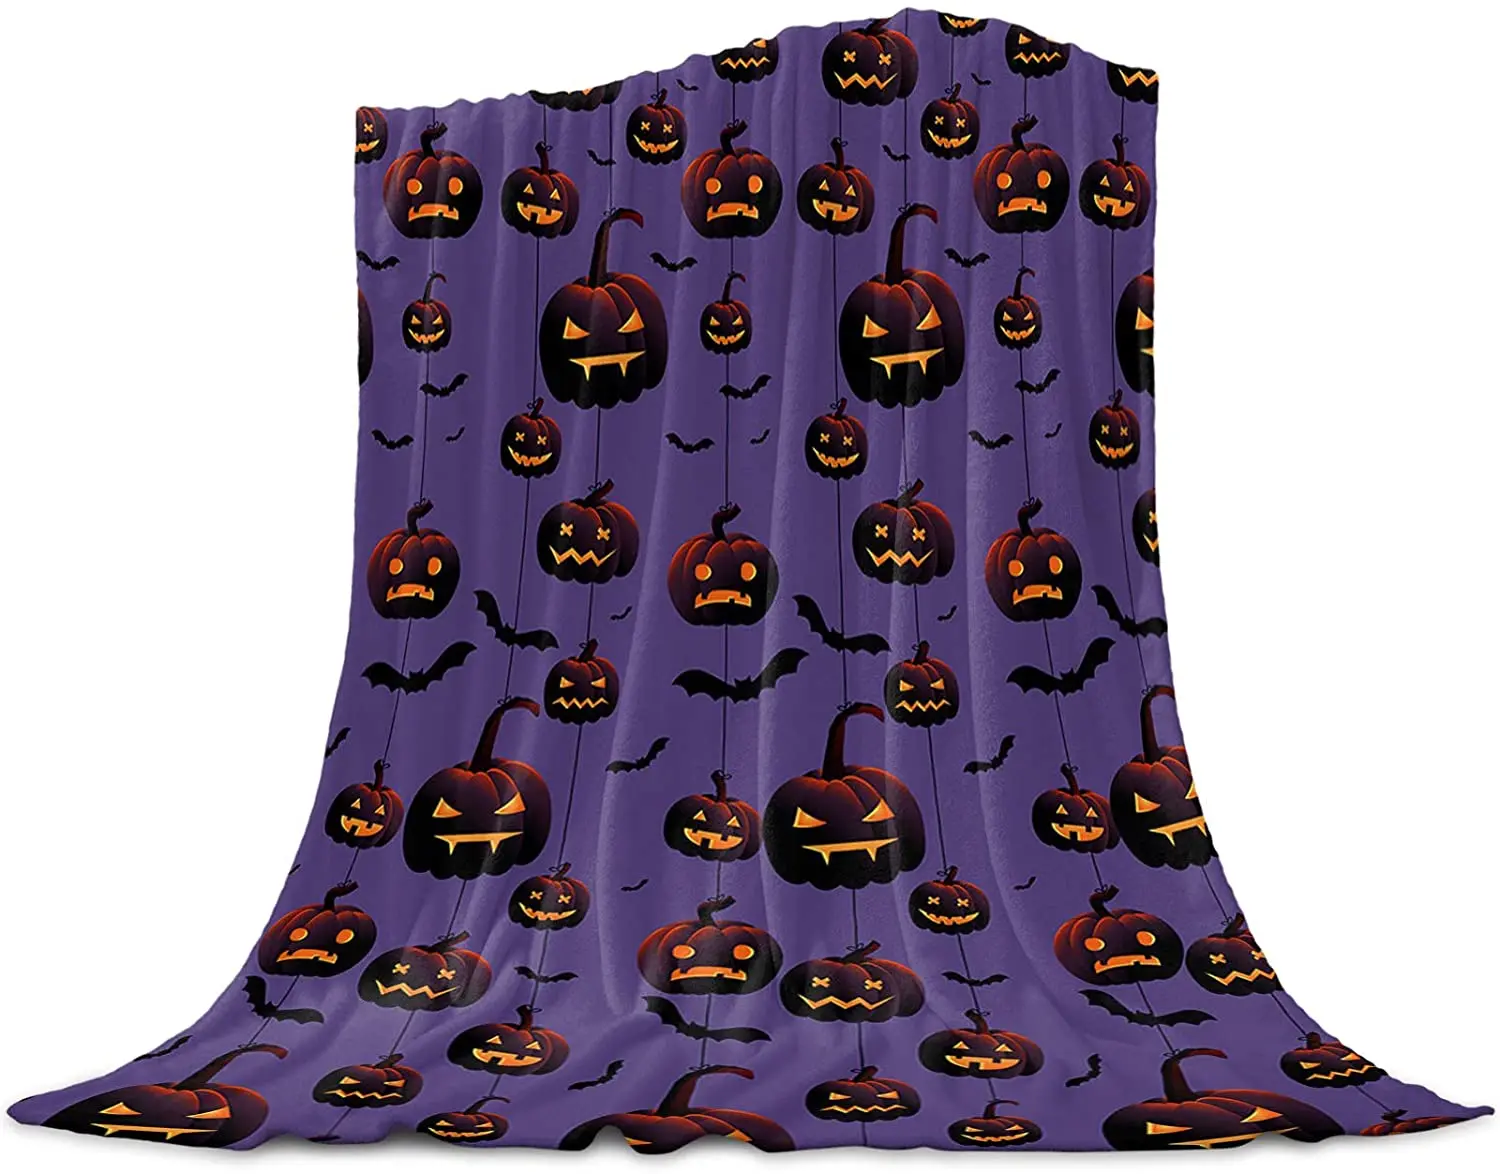 

Фланелевое Одеяло для кровати, супермягкое уютное легкое плюшевое покрывало, Хэллоуин, тыква, летучая мышь, черный, на Хеллоуин